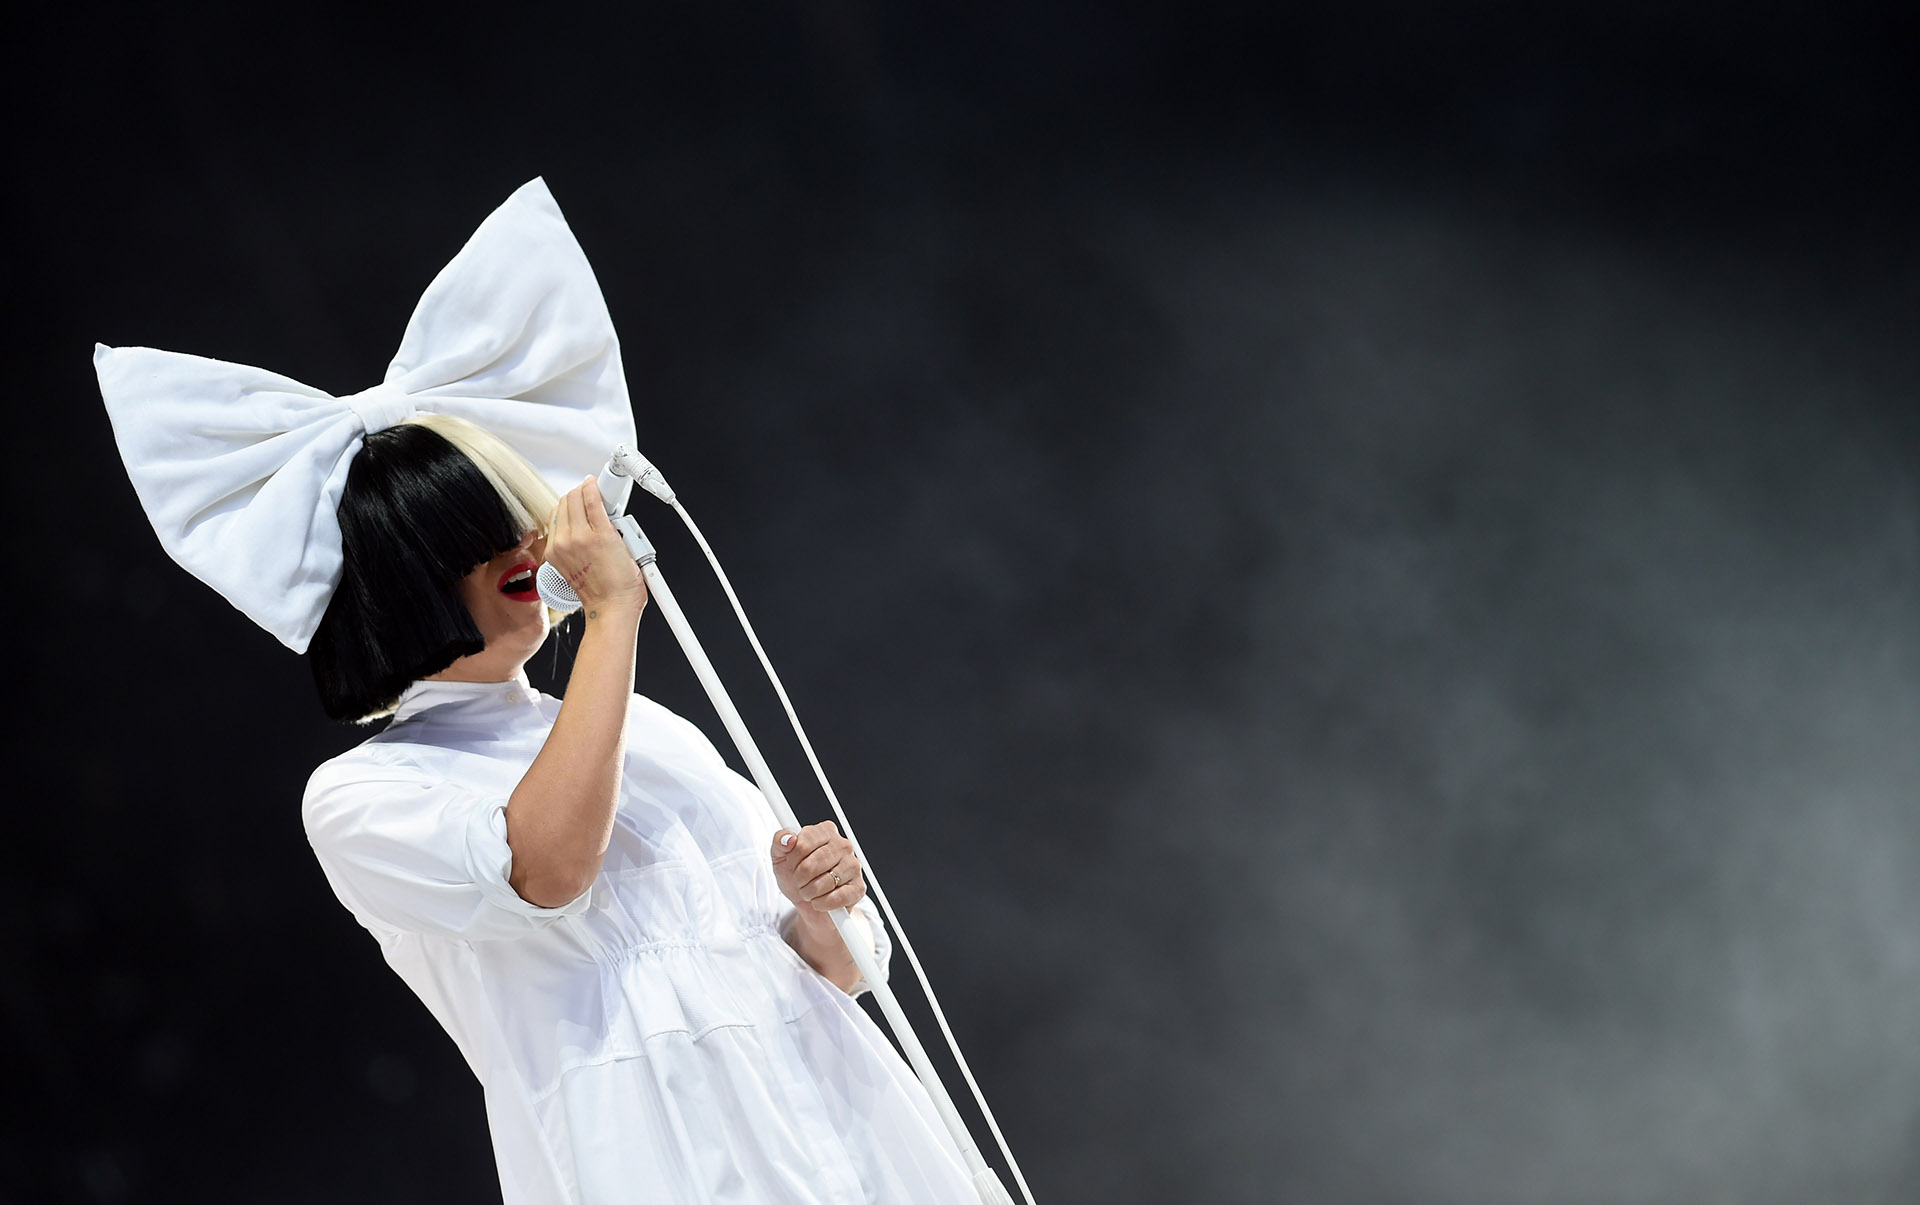 “Durante 45 años me he sentido como ‘Tengo que ponerme mi traje humano’. Y sólo en los dos últimos años he llegado a ser plenamente yo misma”, declaró Sia en la entrevista
(Getty)